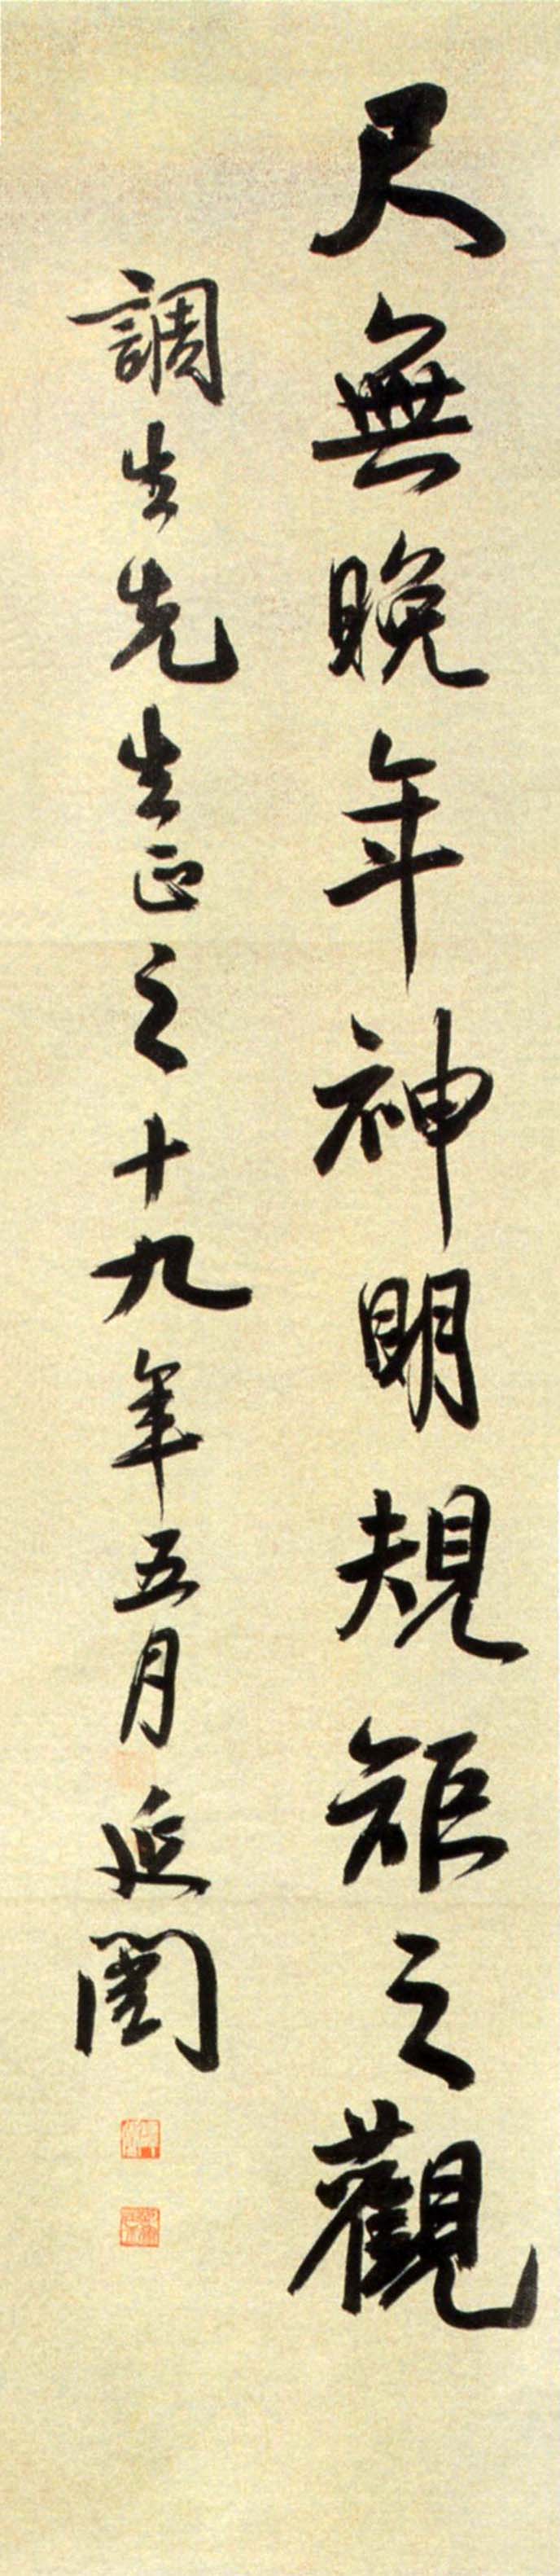 谭延闿《行书临米芾诗四条屏》-常州博物馆藏(图5)